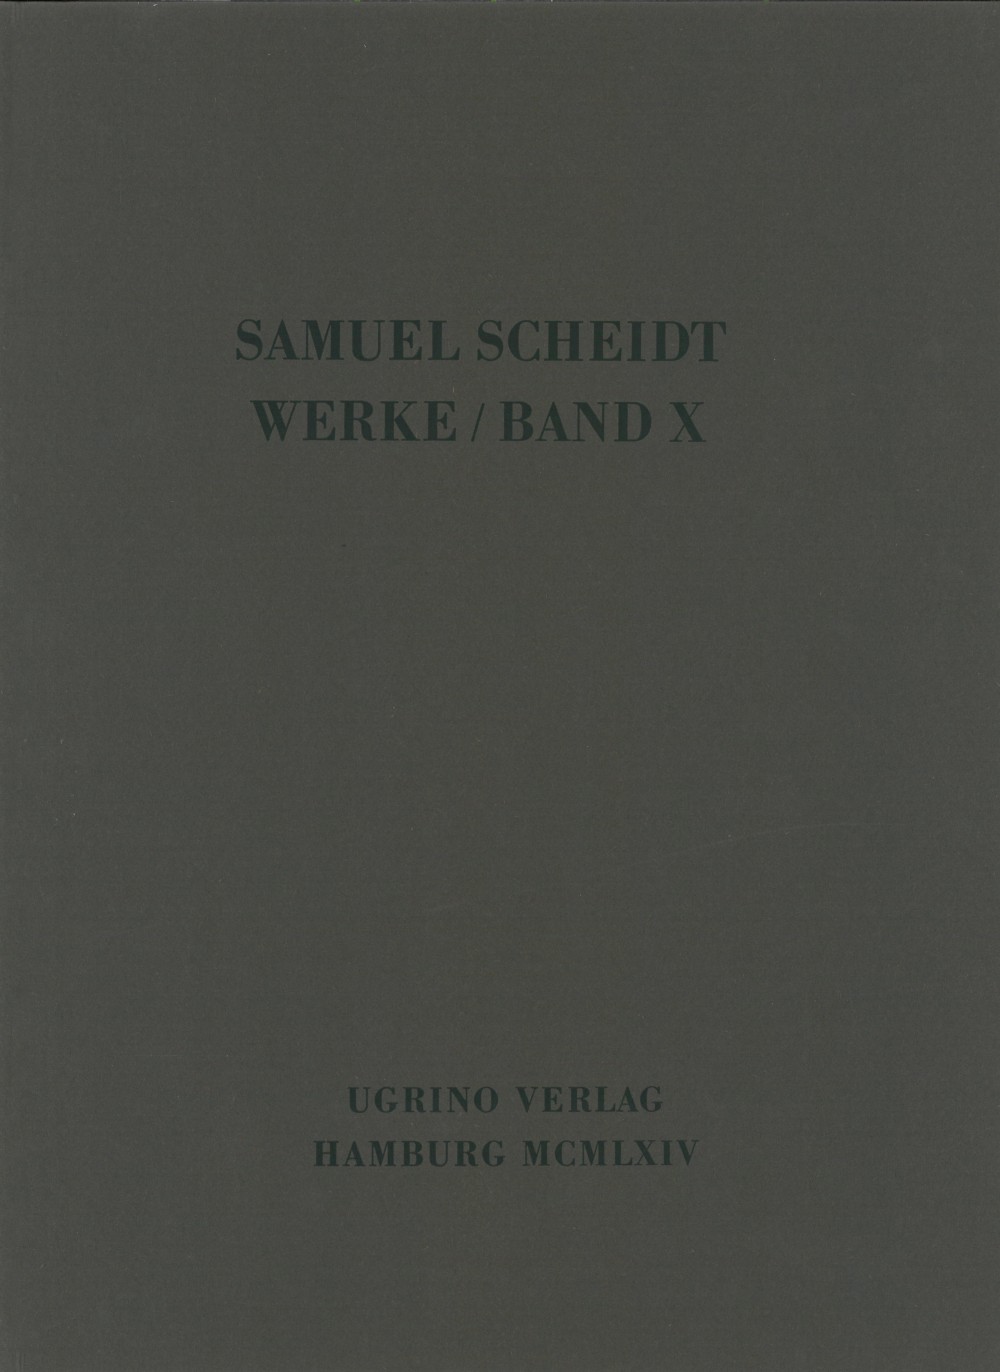 Geistliche Konzerte Teil III/1 (SCHEIDT SAMUEL)